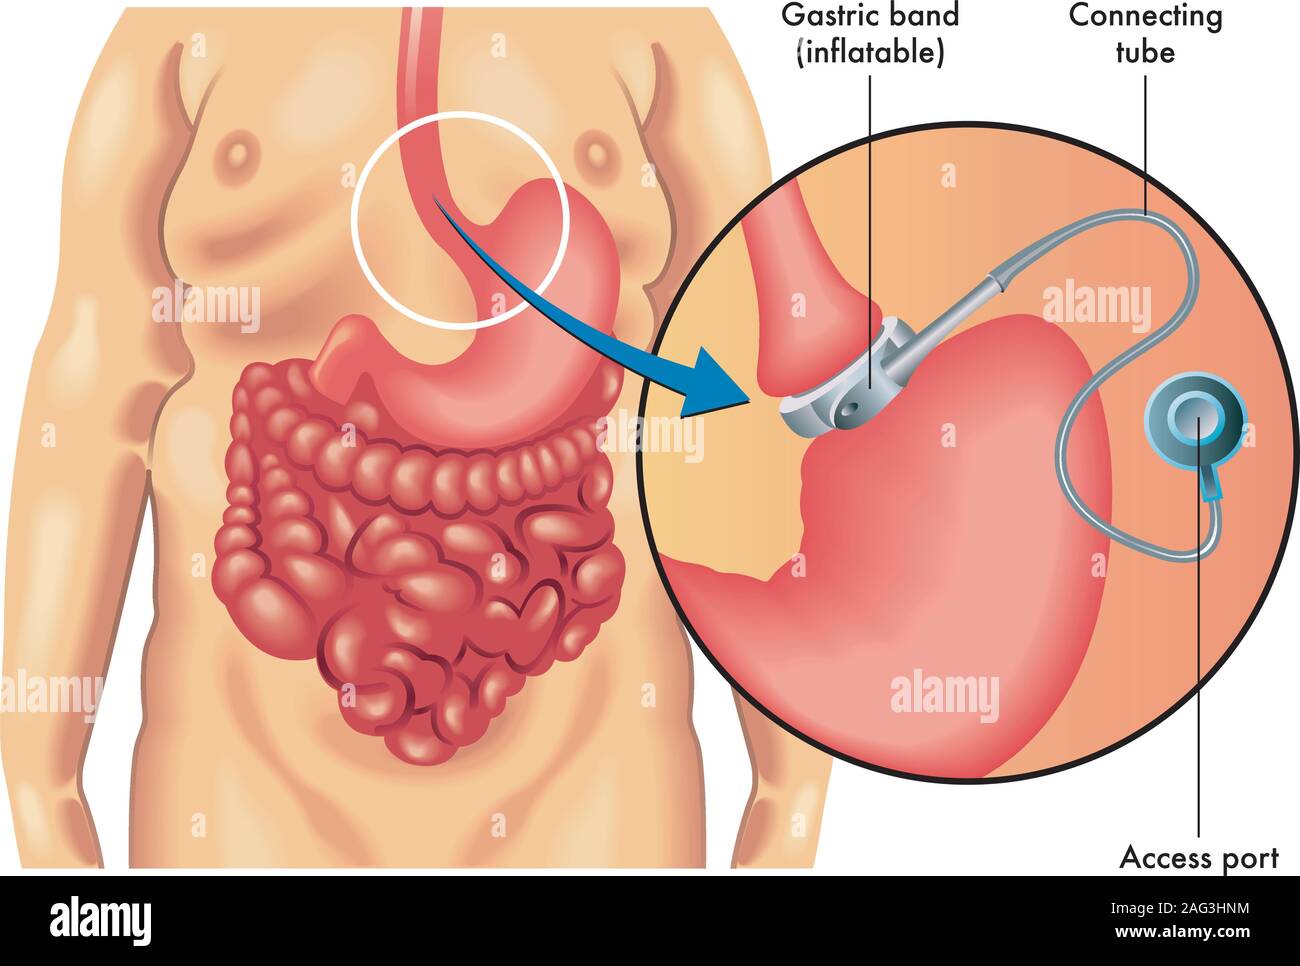 Illustrazione medica di un regolabile bendaggio gastrico. Illustrazione Vettoriale